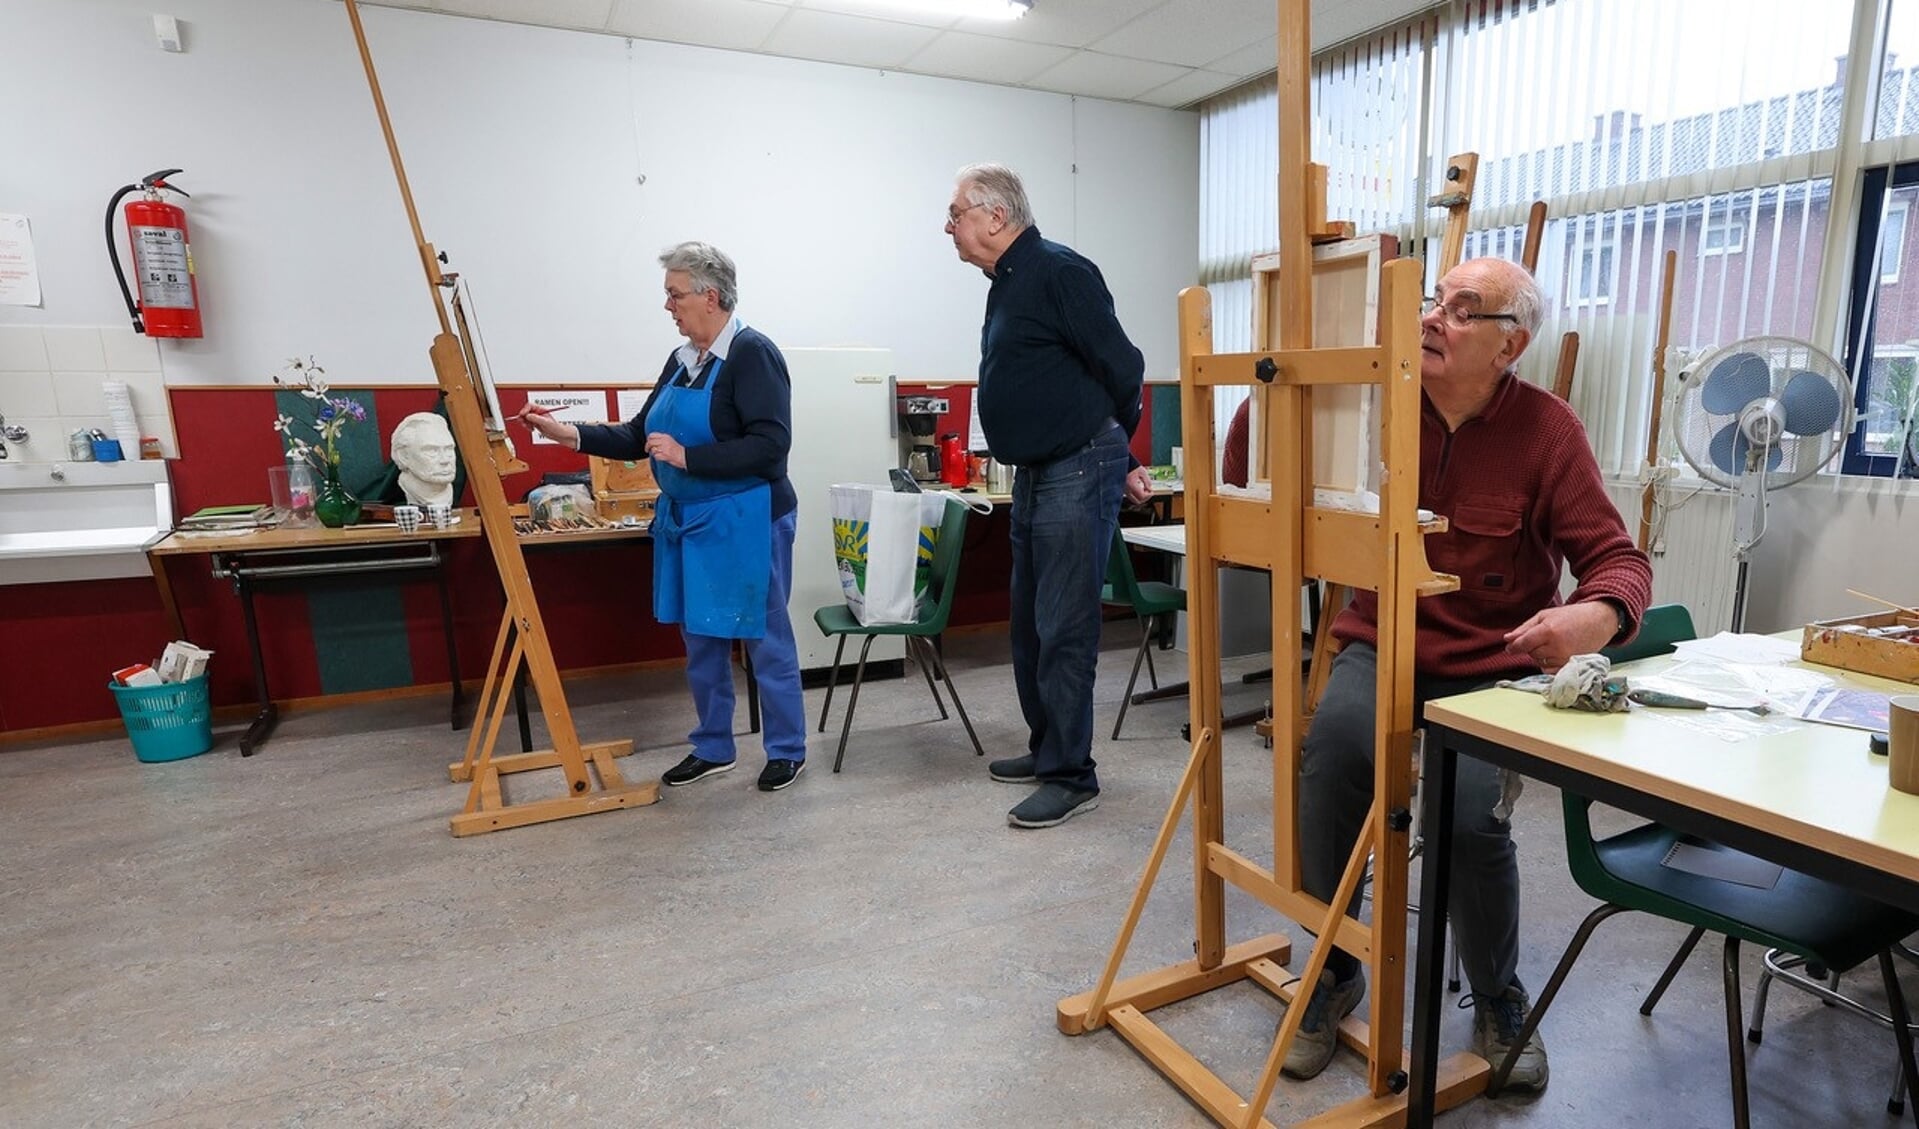 Amateurschildervereniging het Penseeltje bestaat veertig jaar. Op de achtergrond schildert voorzitter Els Rijnvis. FOTO: Bert Jansen.